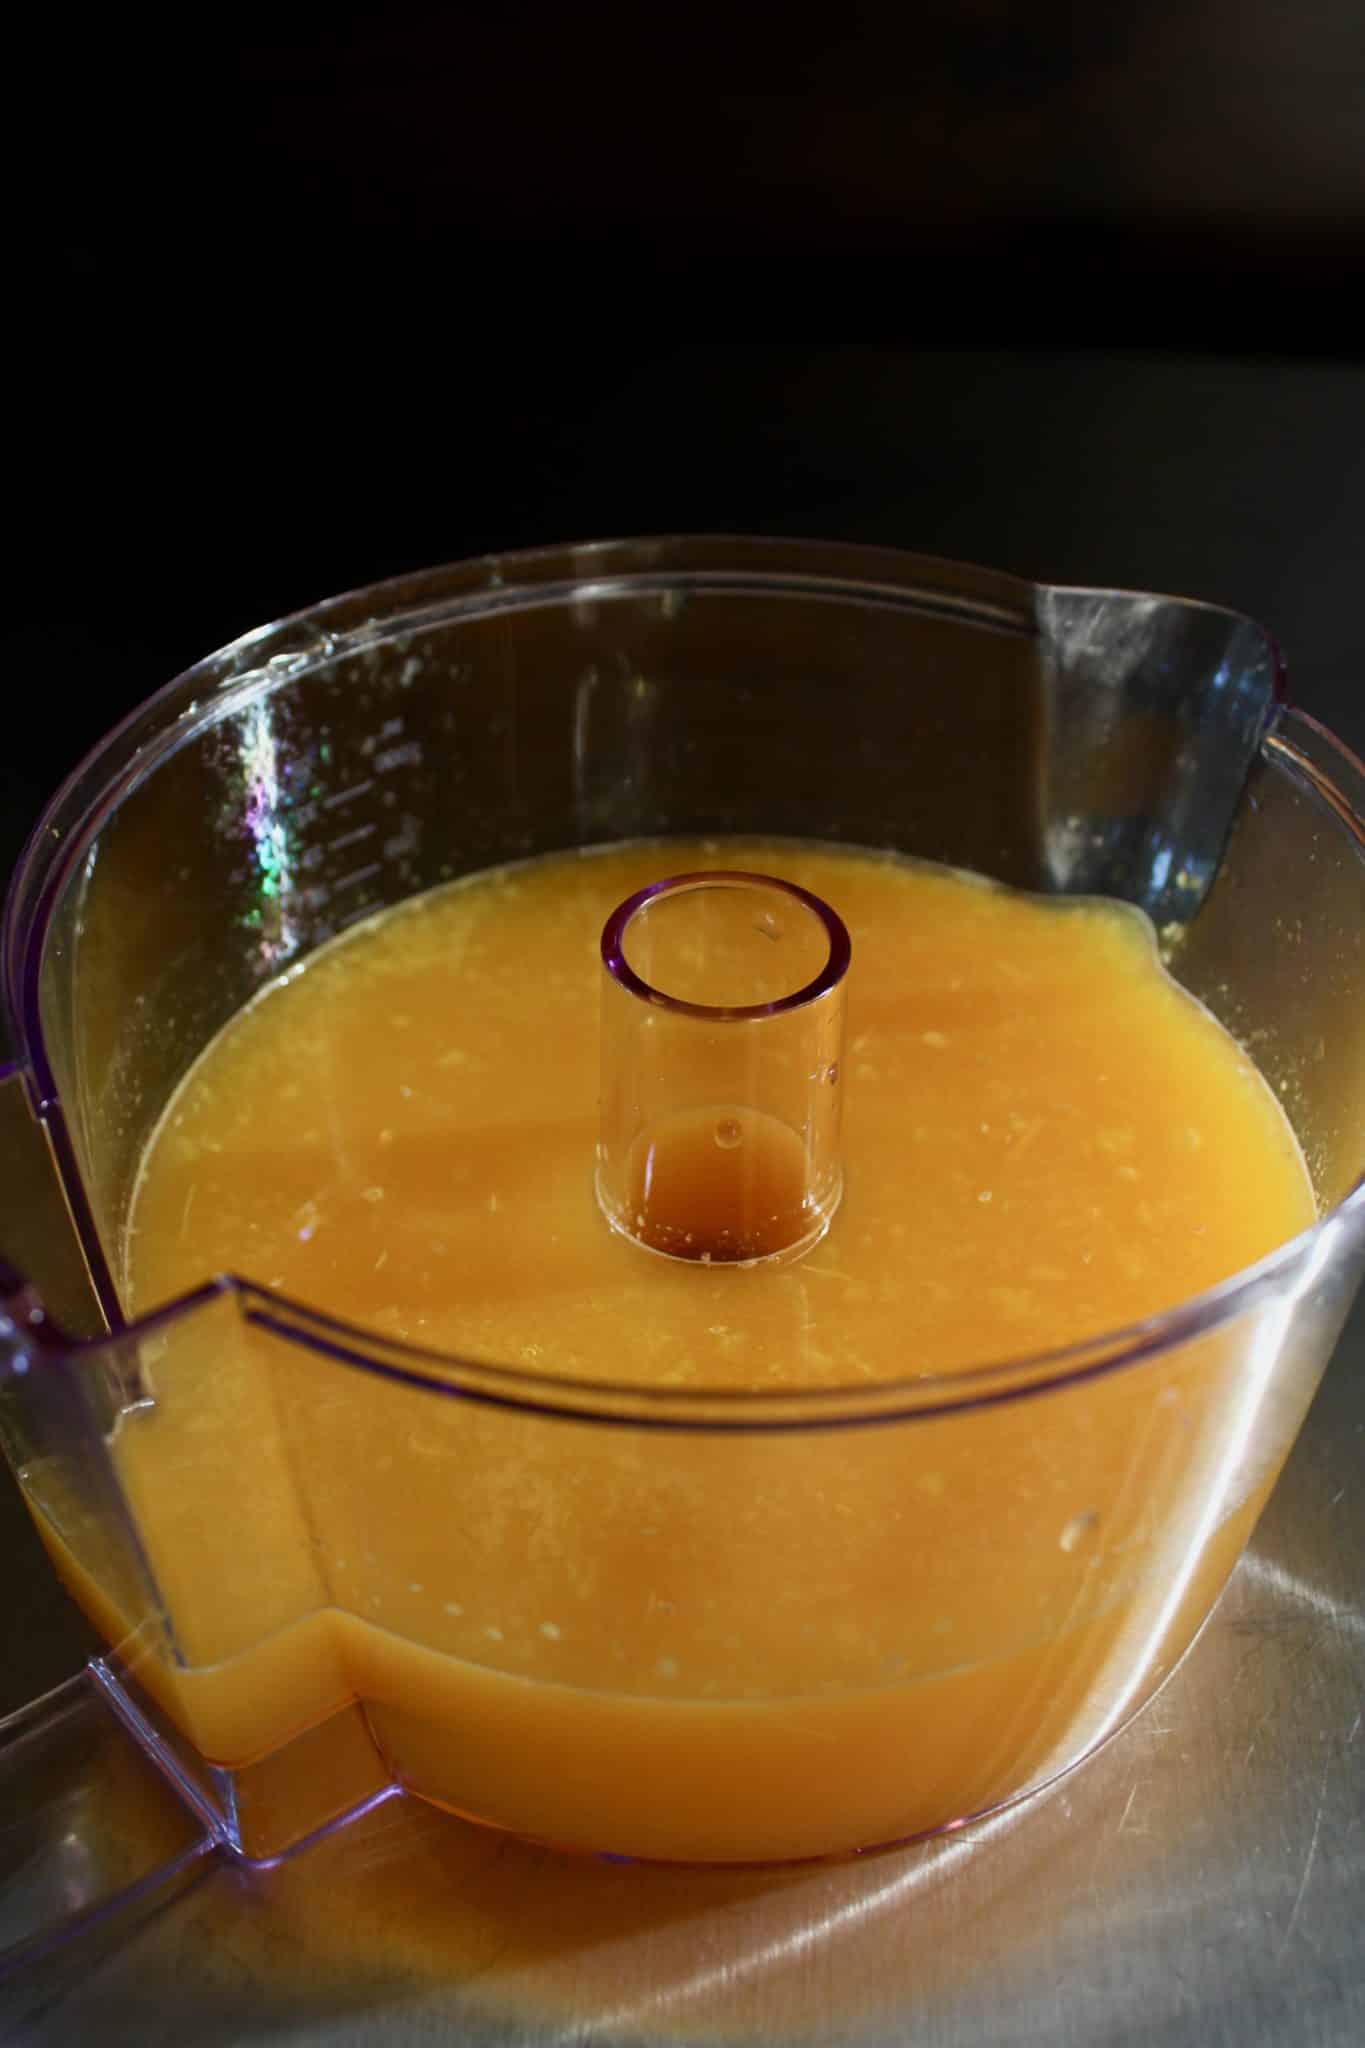 freshly squeeze orange juice in a juicer.